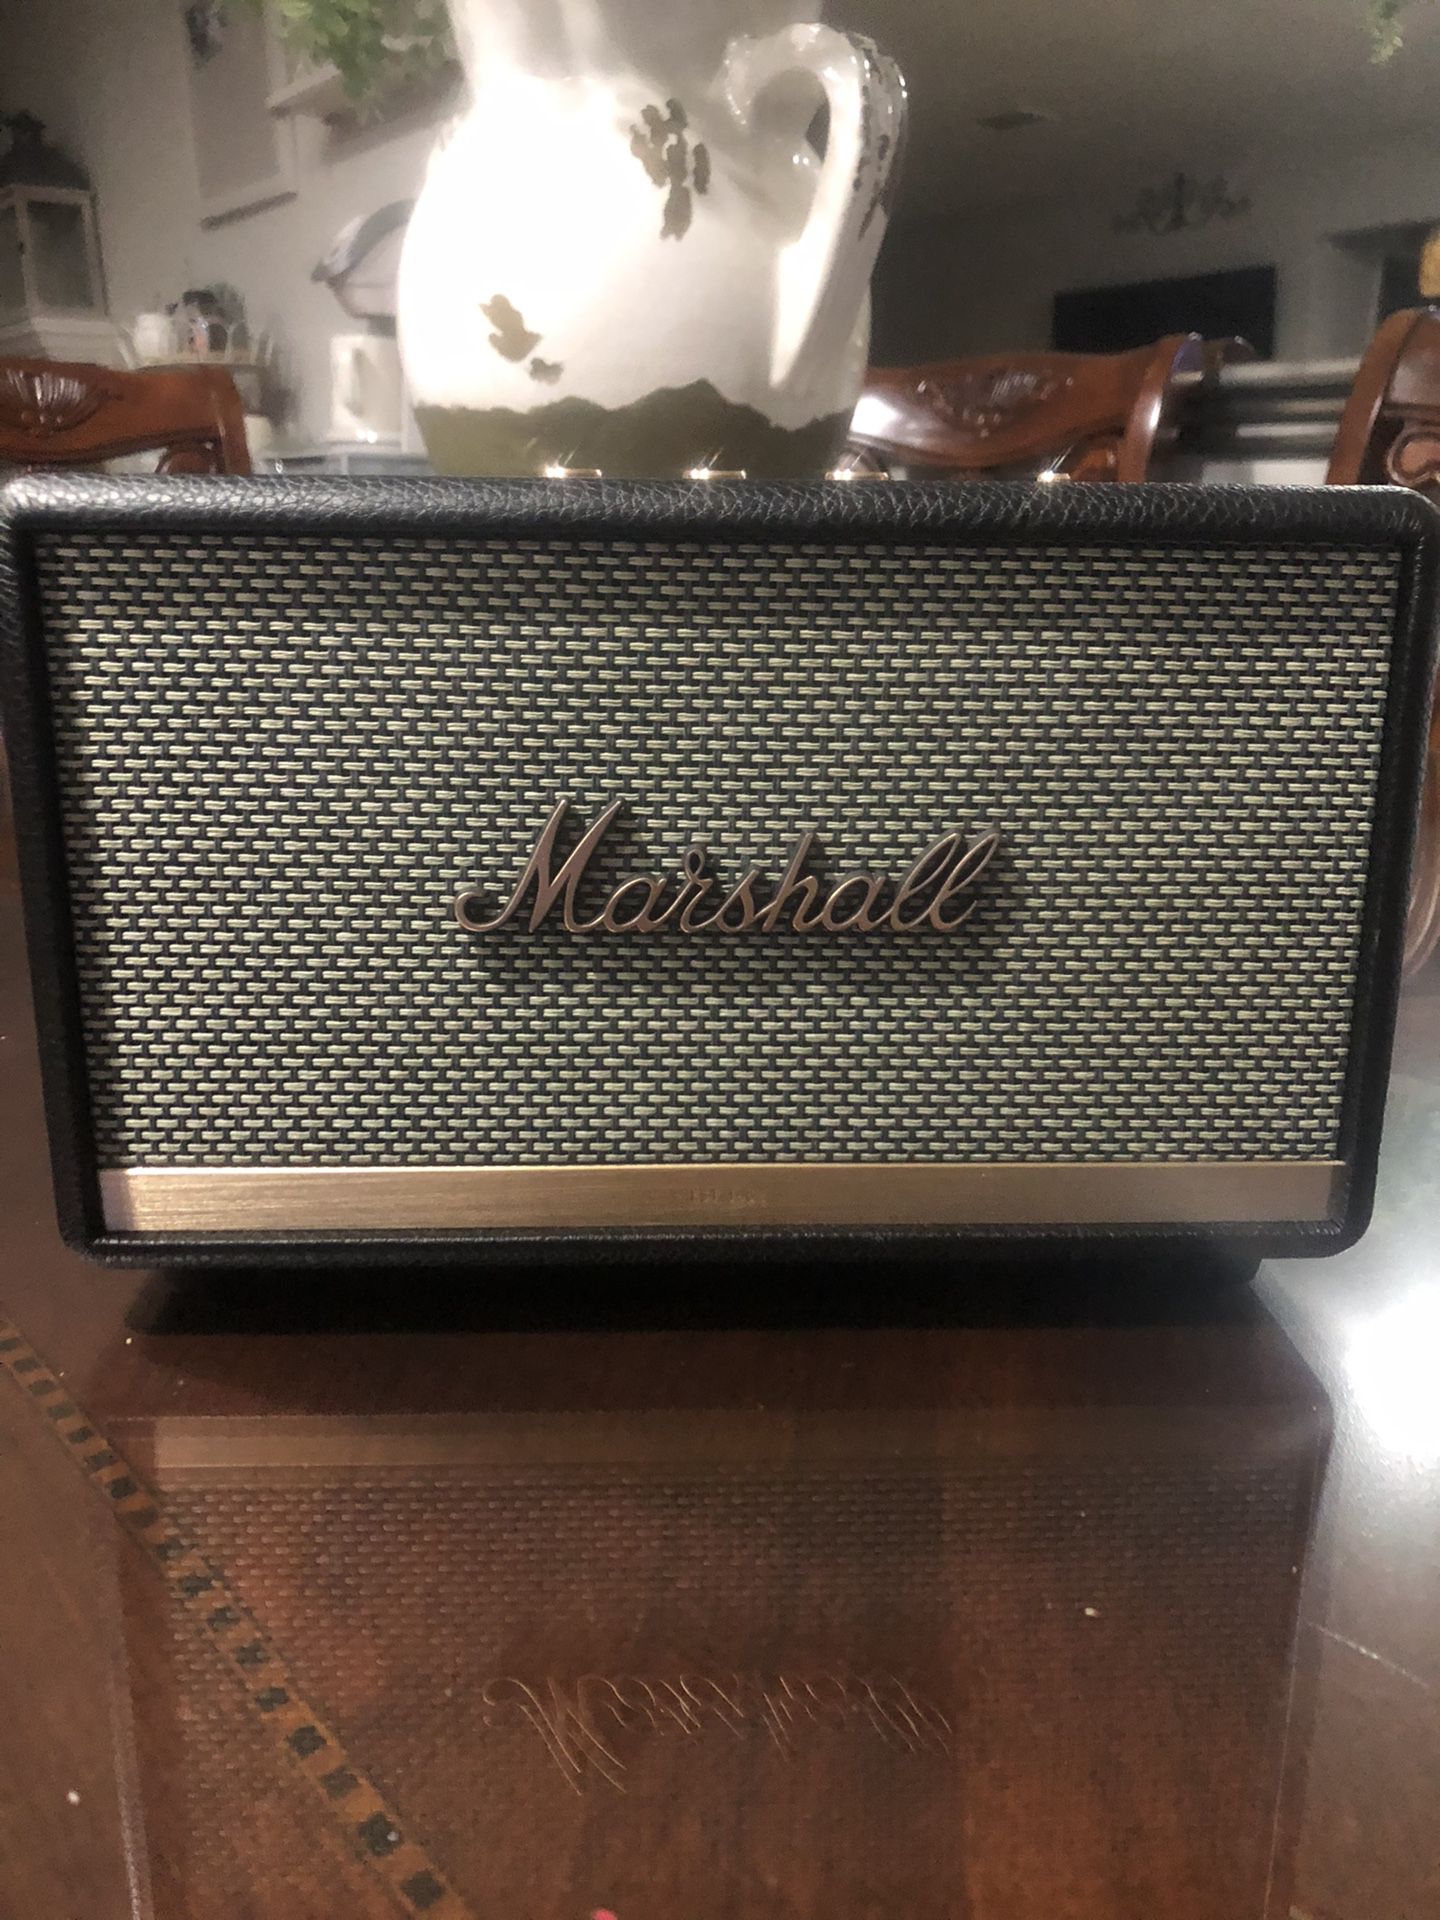 Marshall Acton II Bluetooth Speaker 